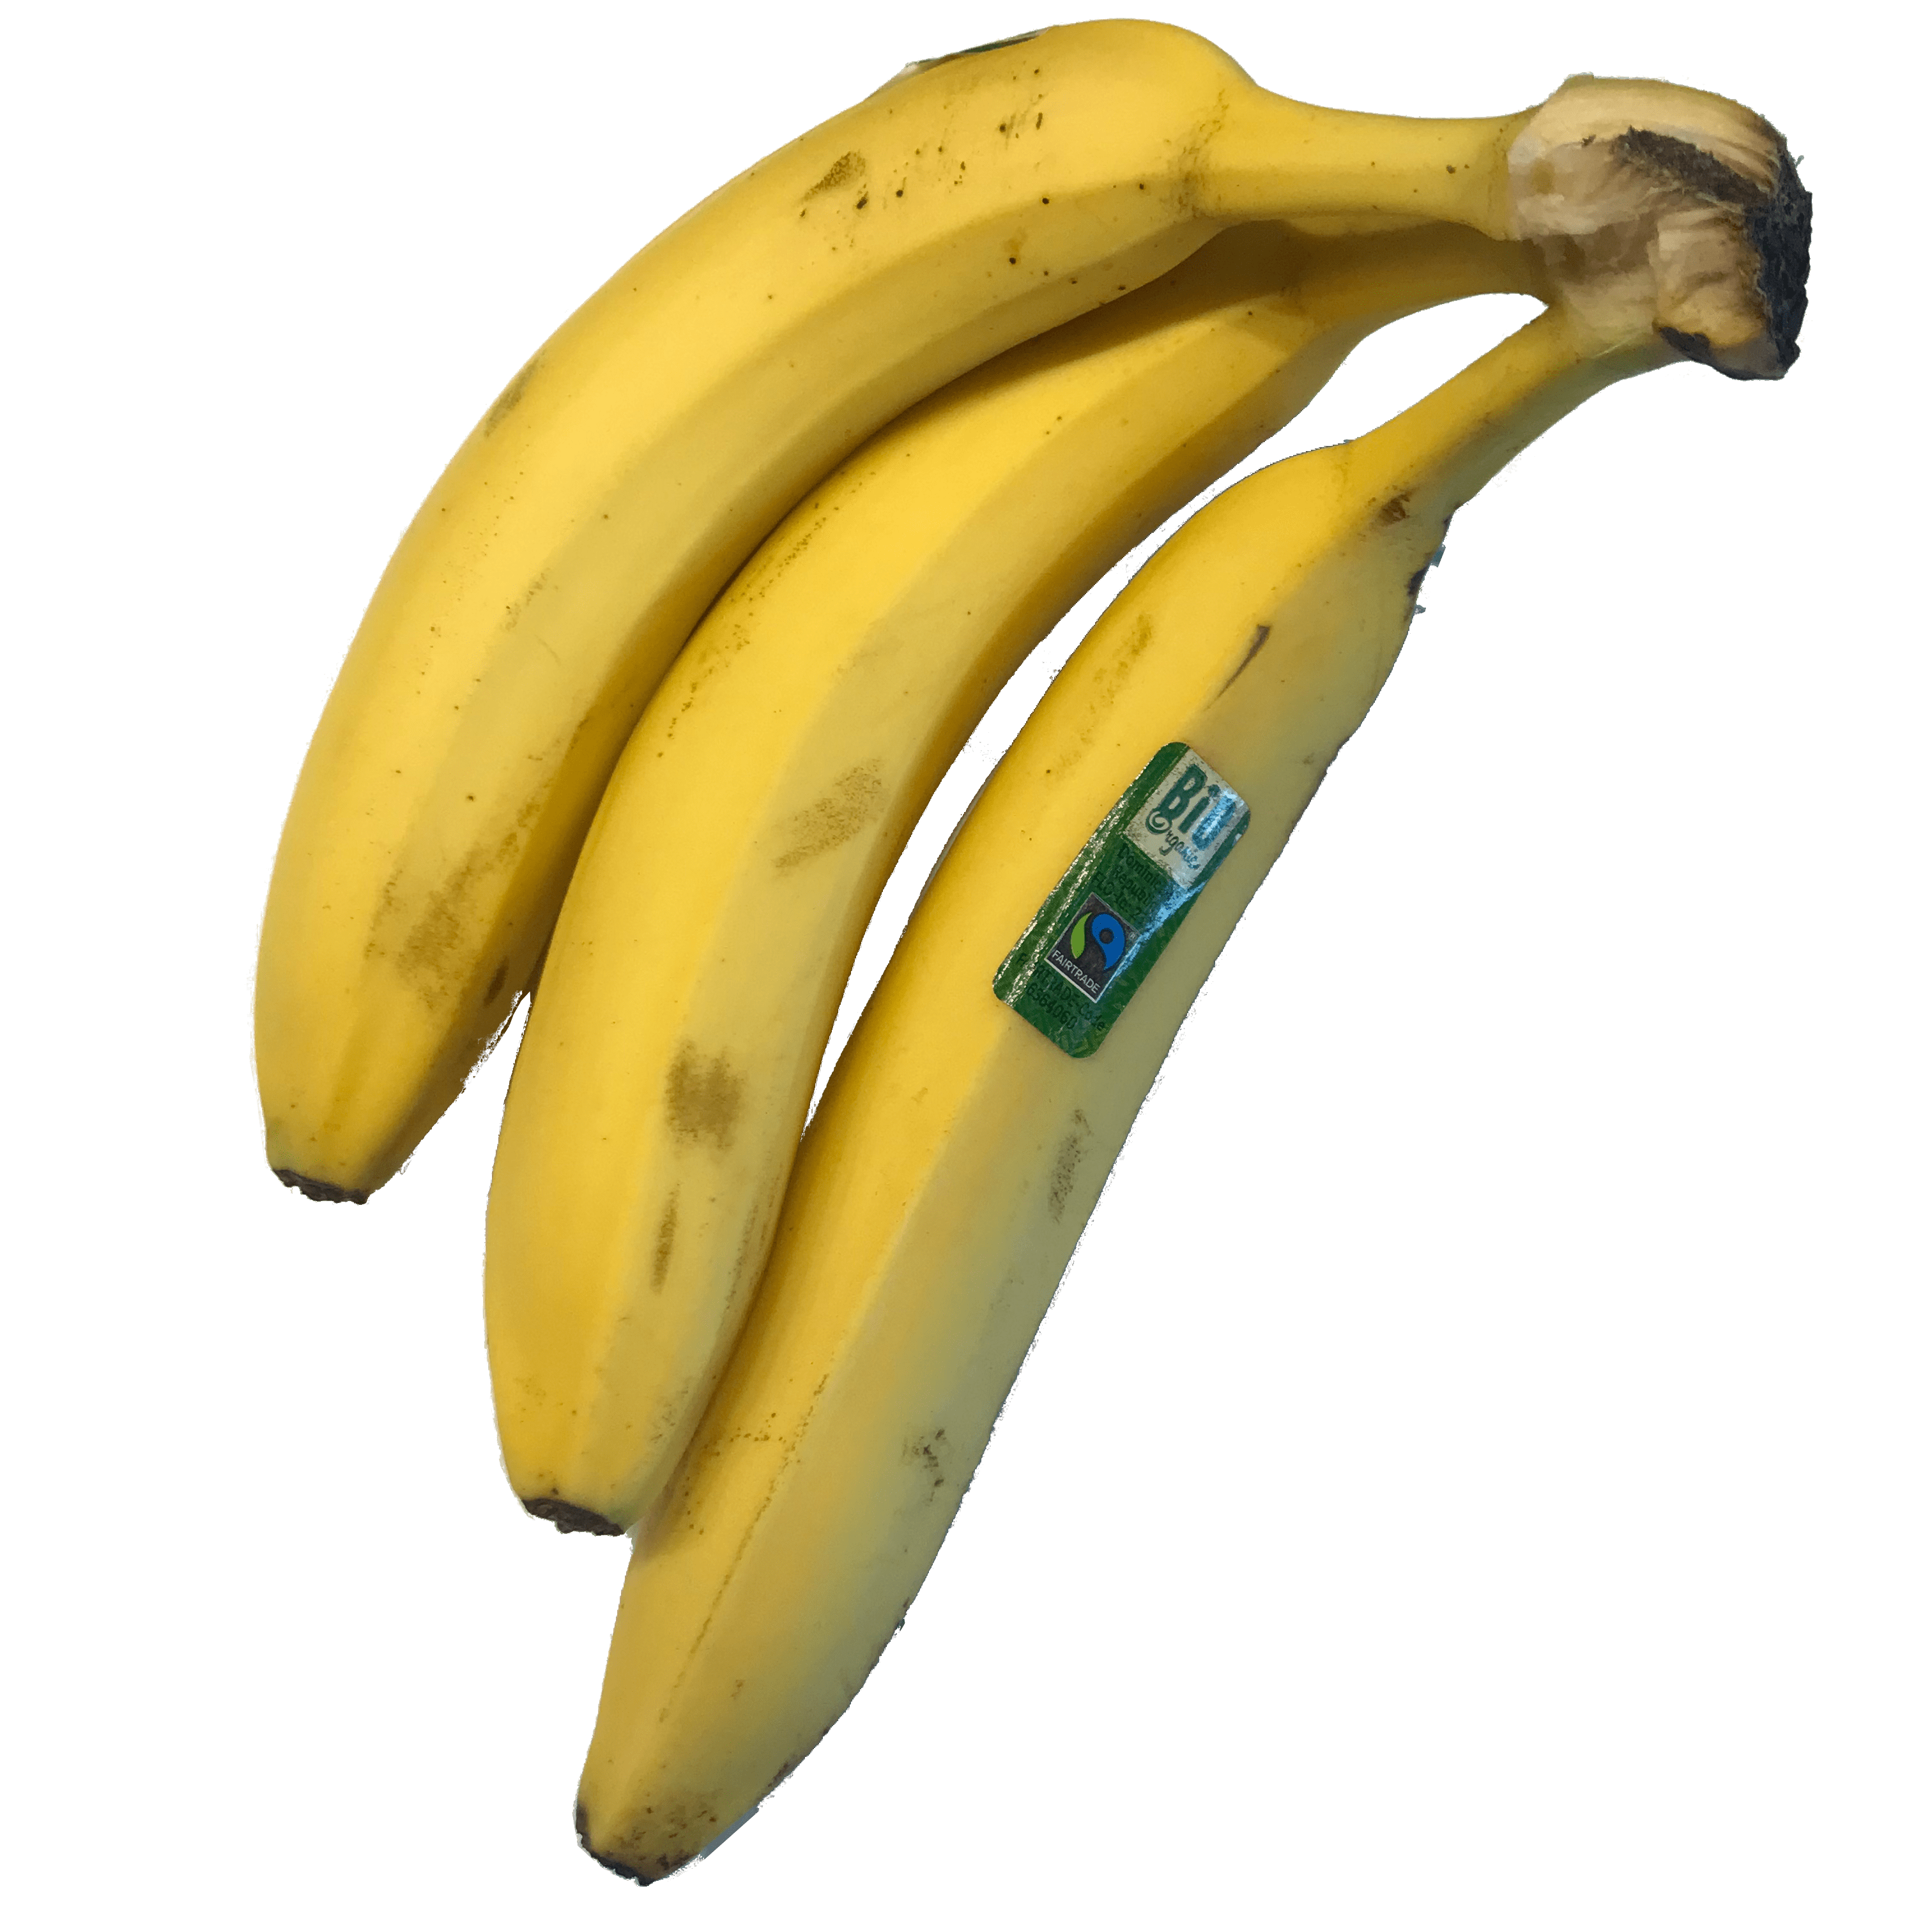 Beautiful Banana